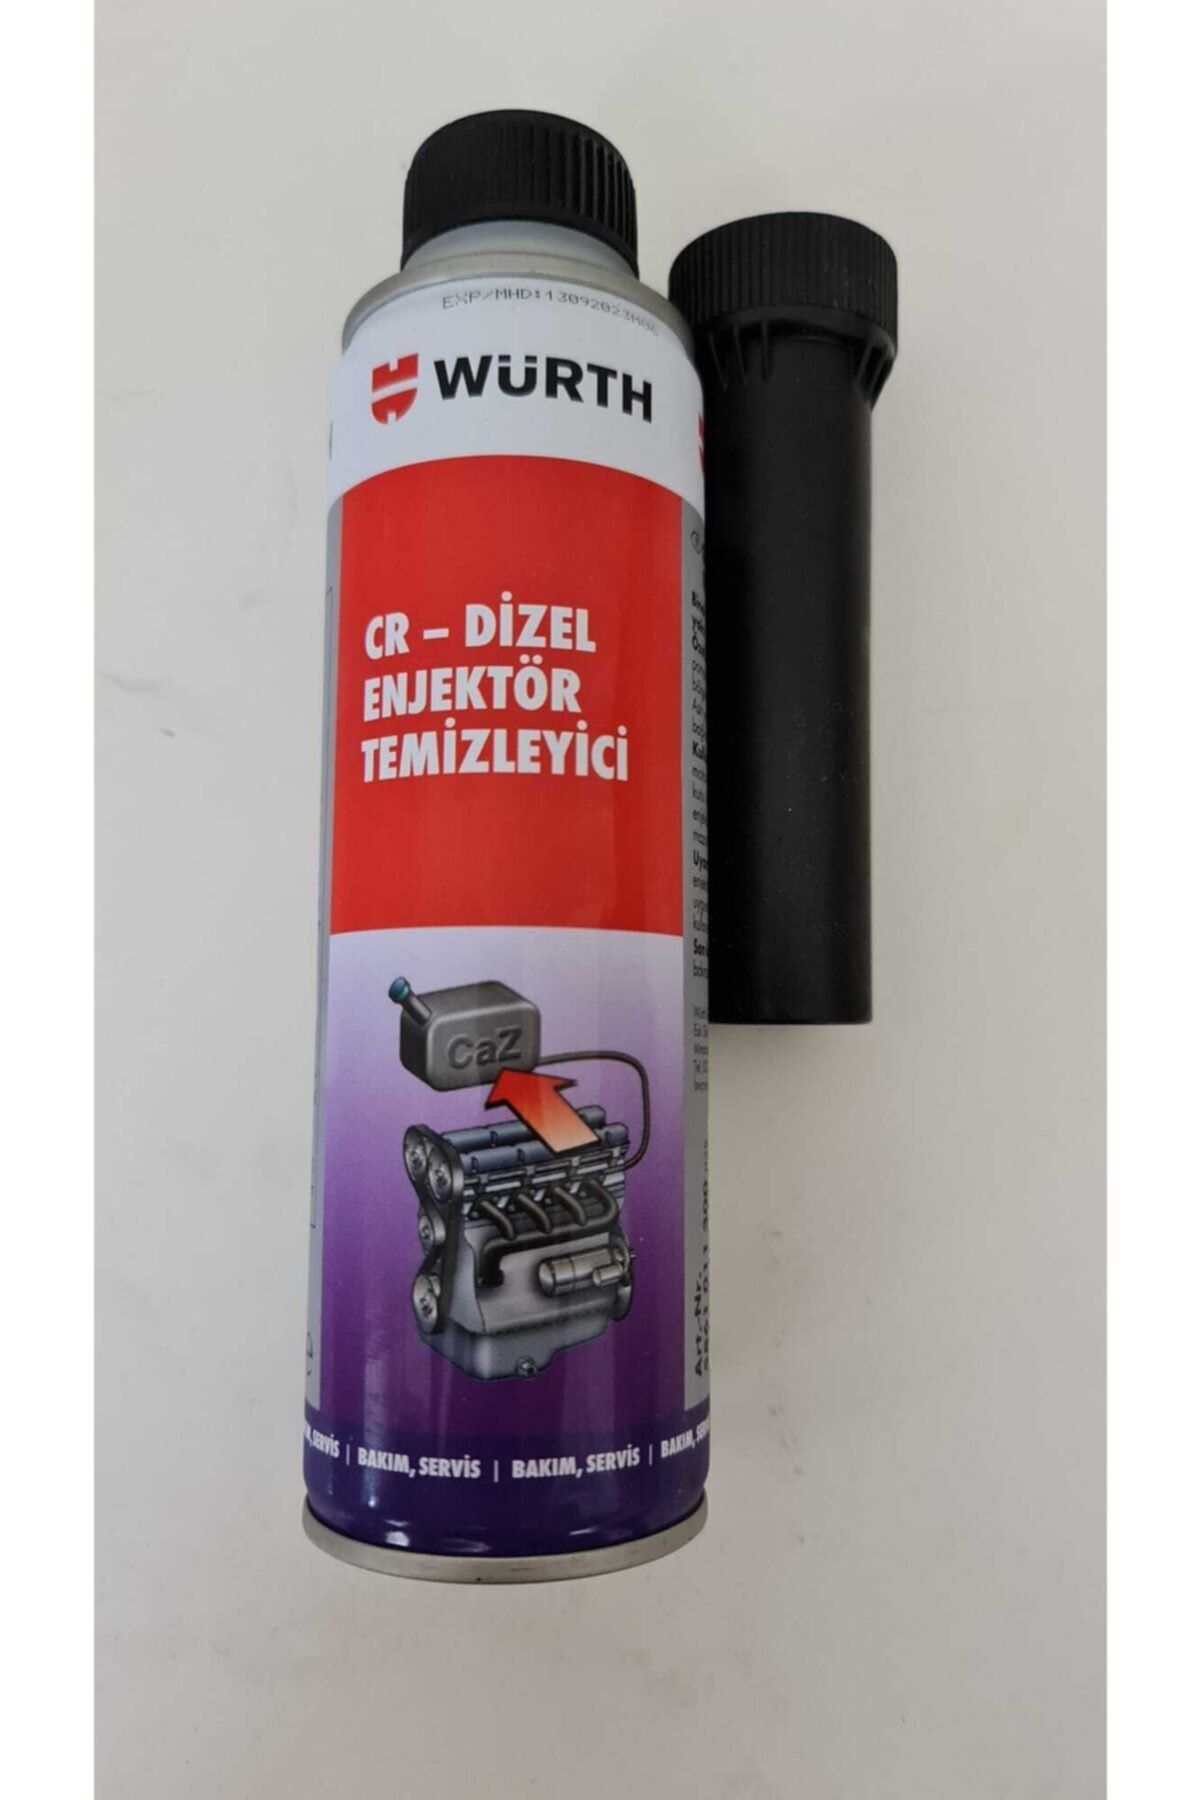 Würth 300 Ml Enjektör Temizleyici Dizel Yakıt Katkısı